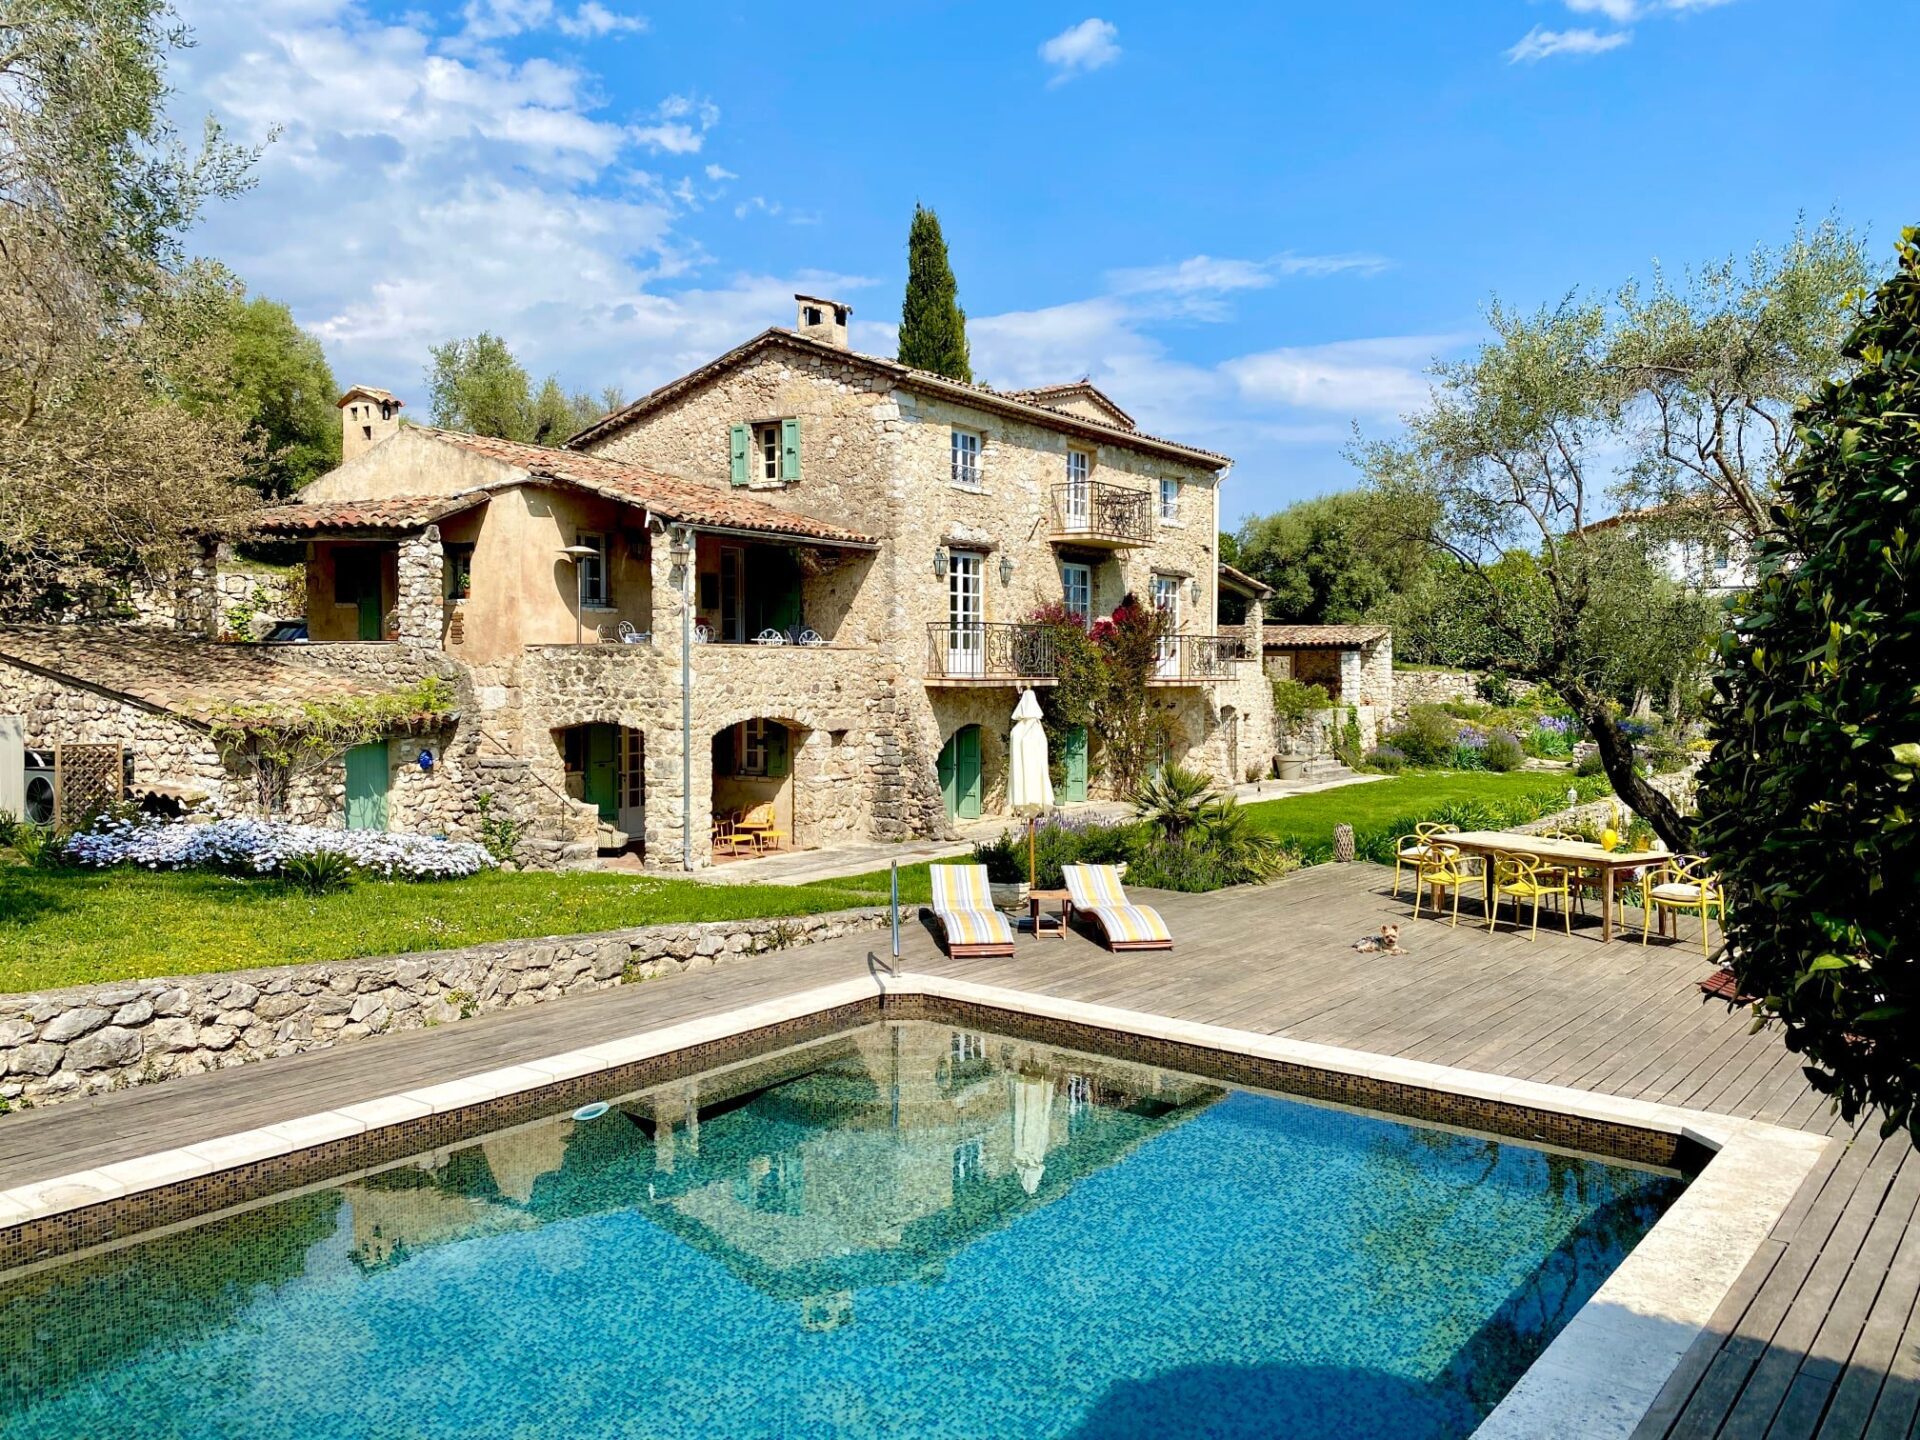 Une maison d’hôte au charme provençal qui vous plaira certainement !